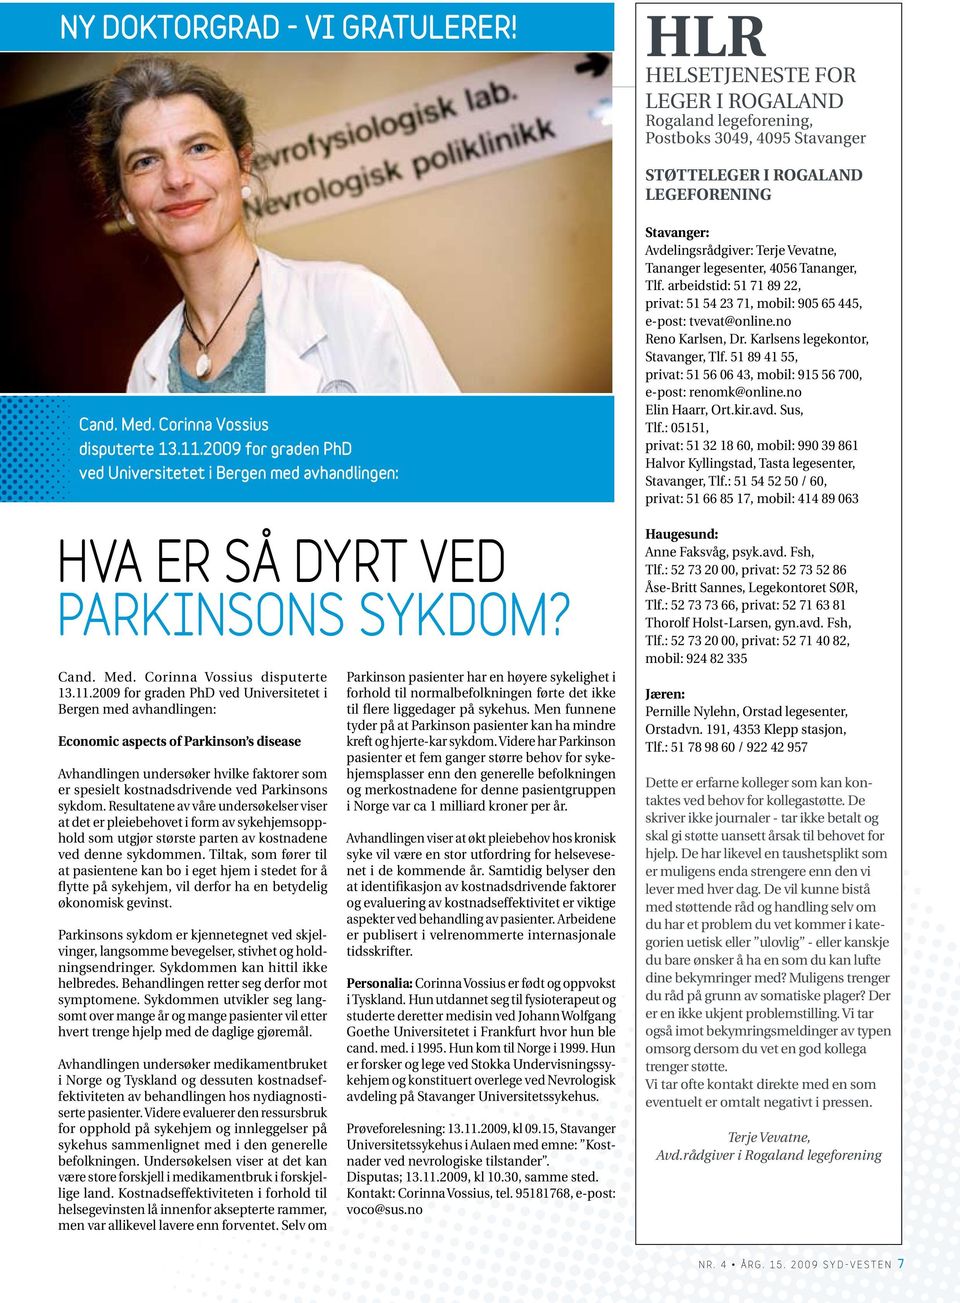 med avhandlingen: Economic aspects of Parkinson s disease Avhandlingen undersøker hvilke faktorer som er spesielt kostnadsdrivende ved Parkinsons sykdom.